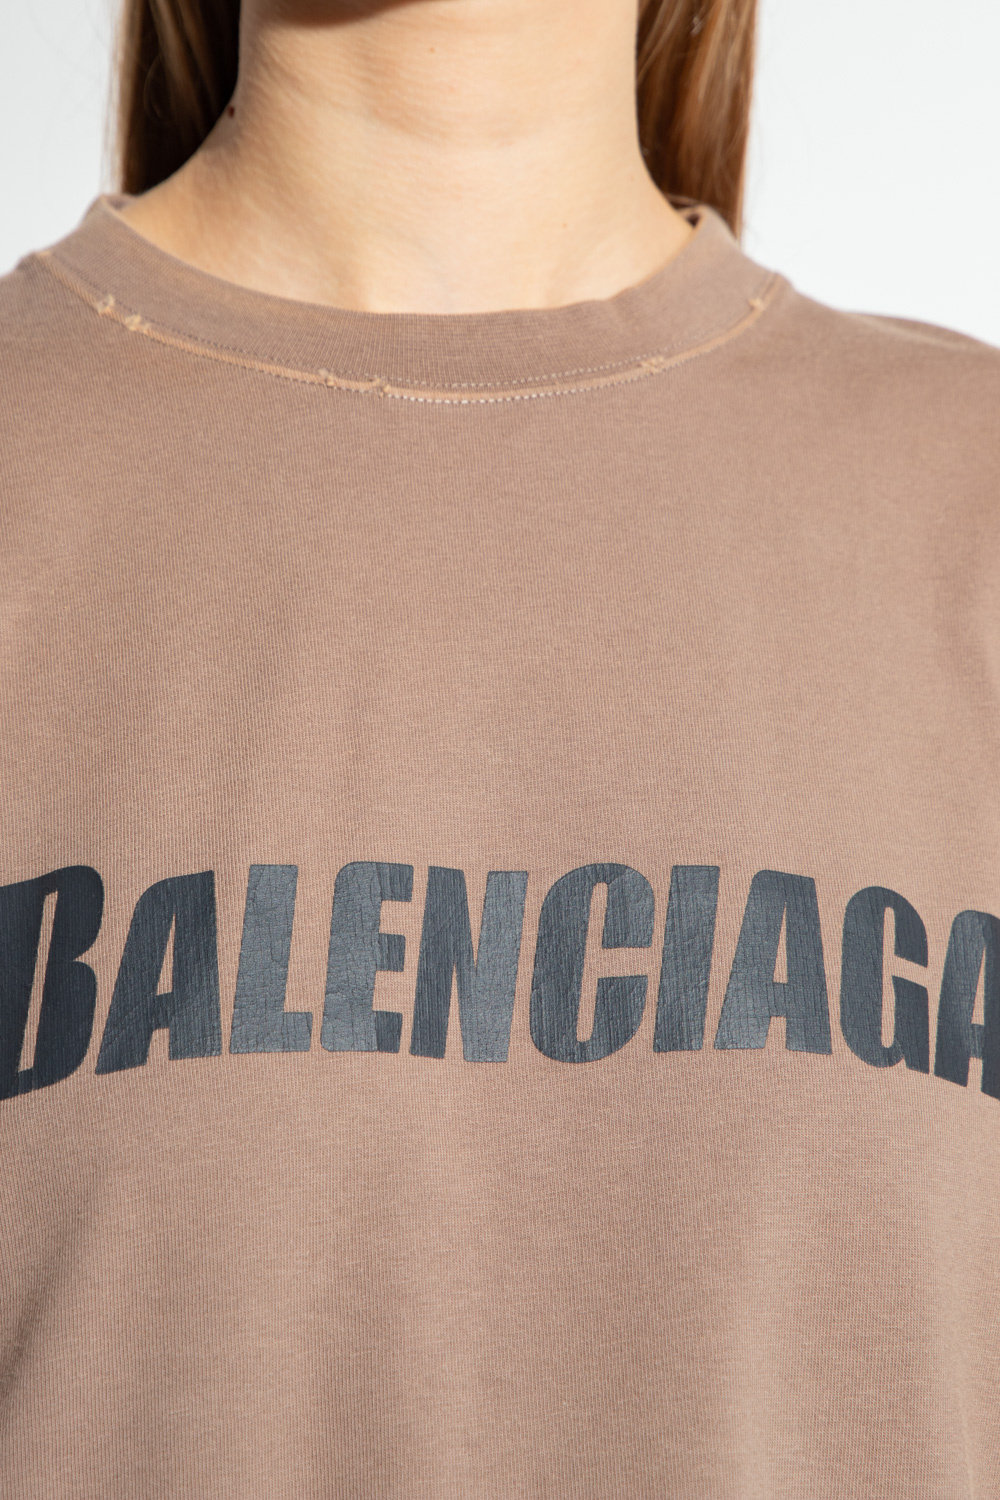 Balenciaga sweatshirt polka with logo a cold wallpullover black